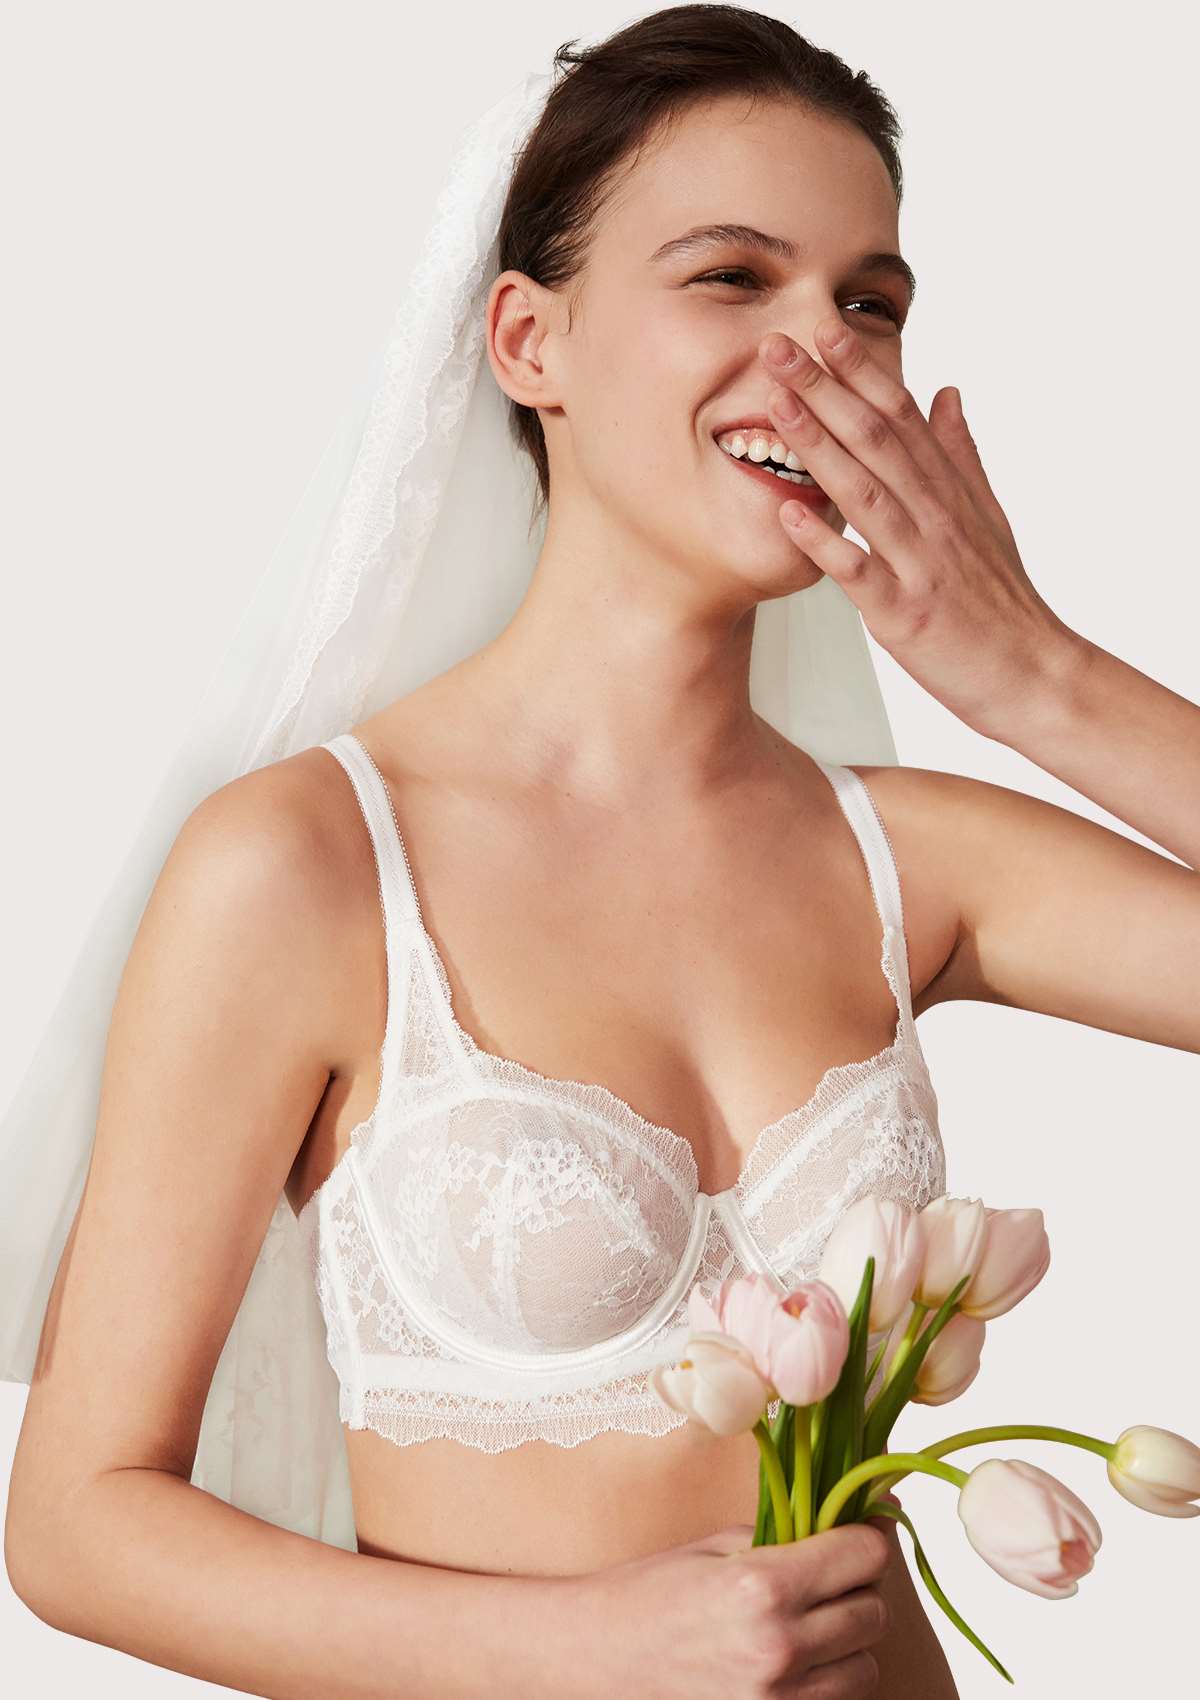 HSIA Floral Lace Unlined Bridal Romantic Balconette Bra Panty Set  - White / 34 / D